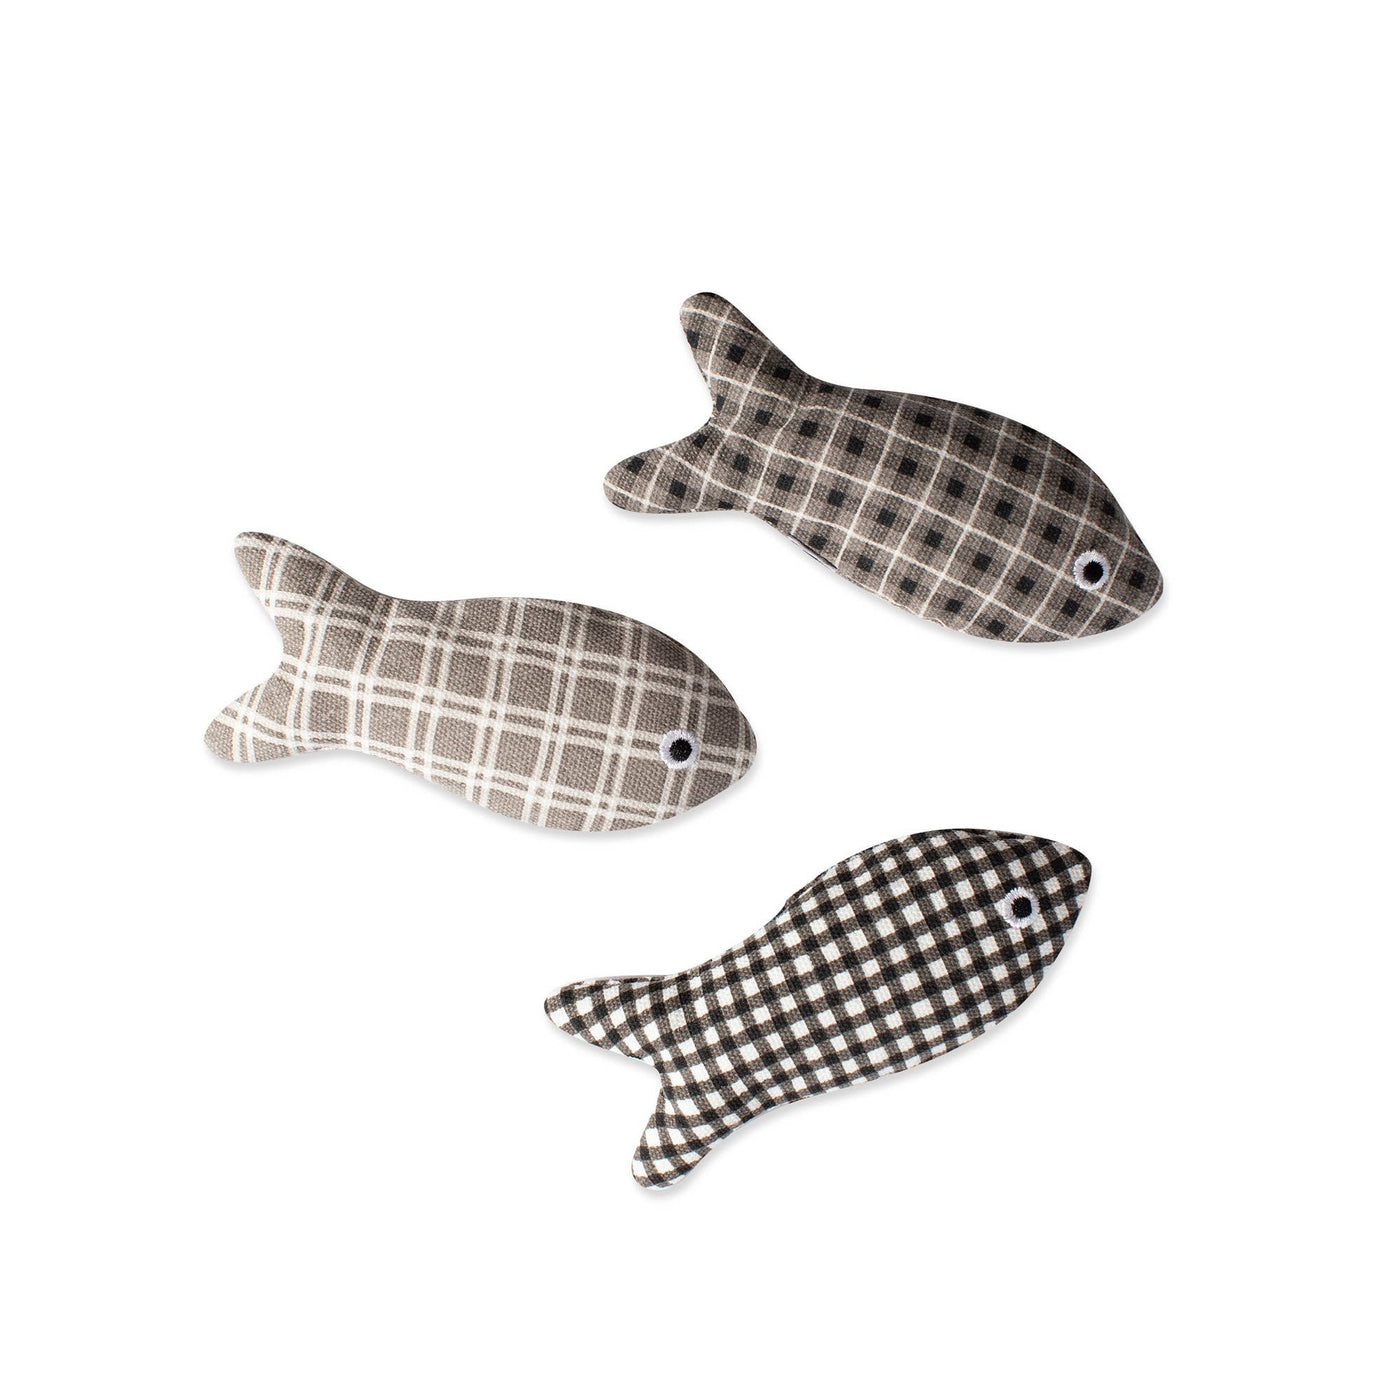 Fringe Plaid Fish Cat Toy Set Of 3 *